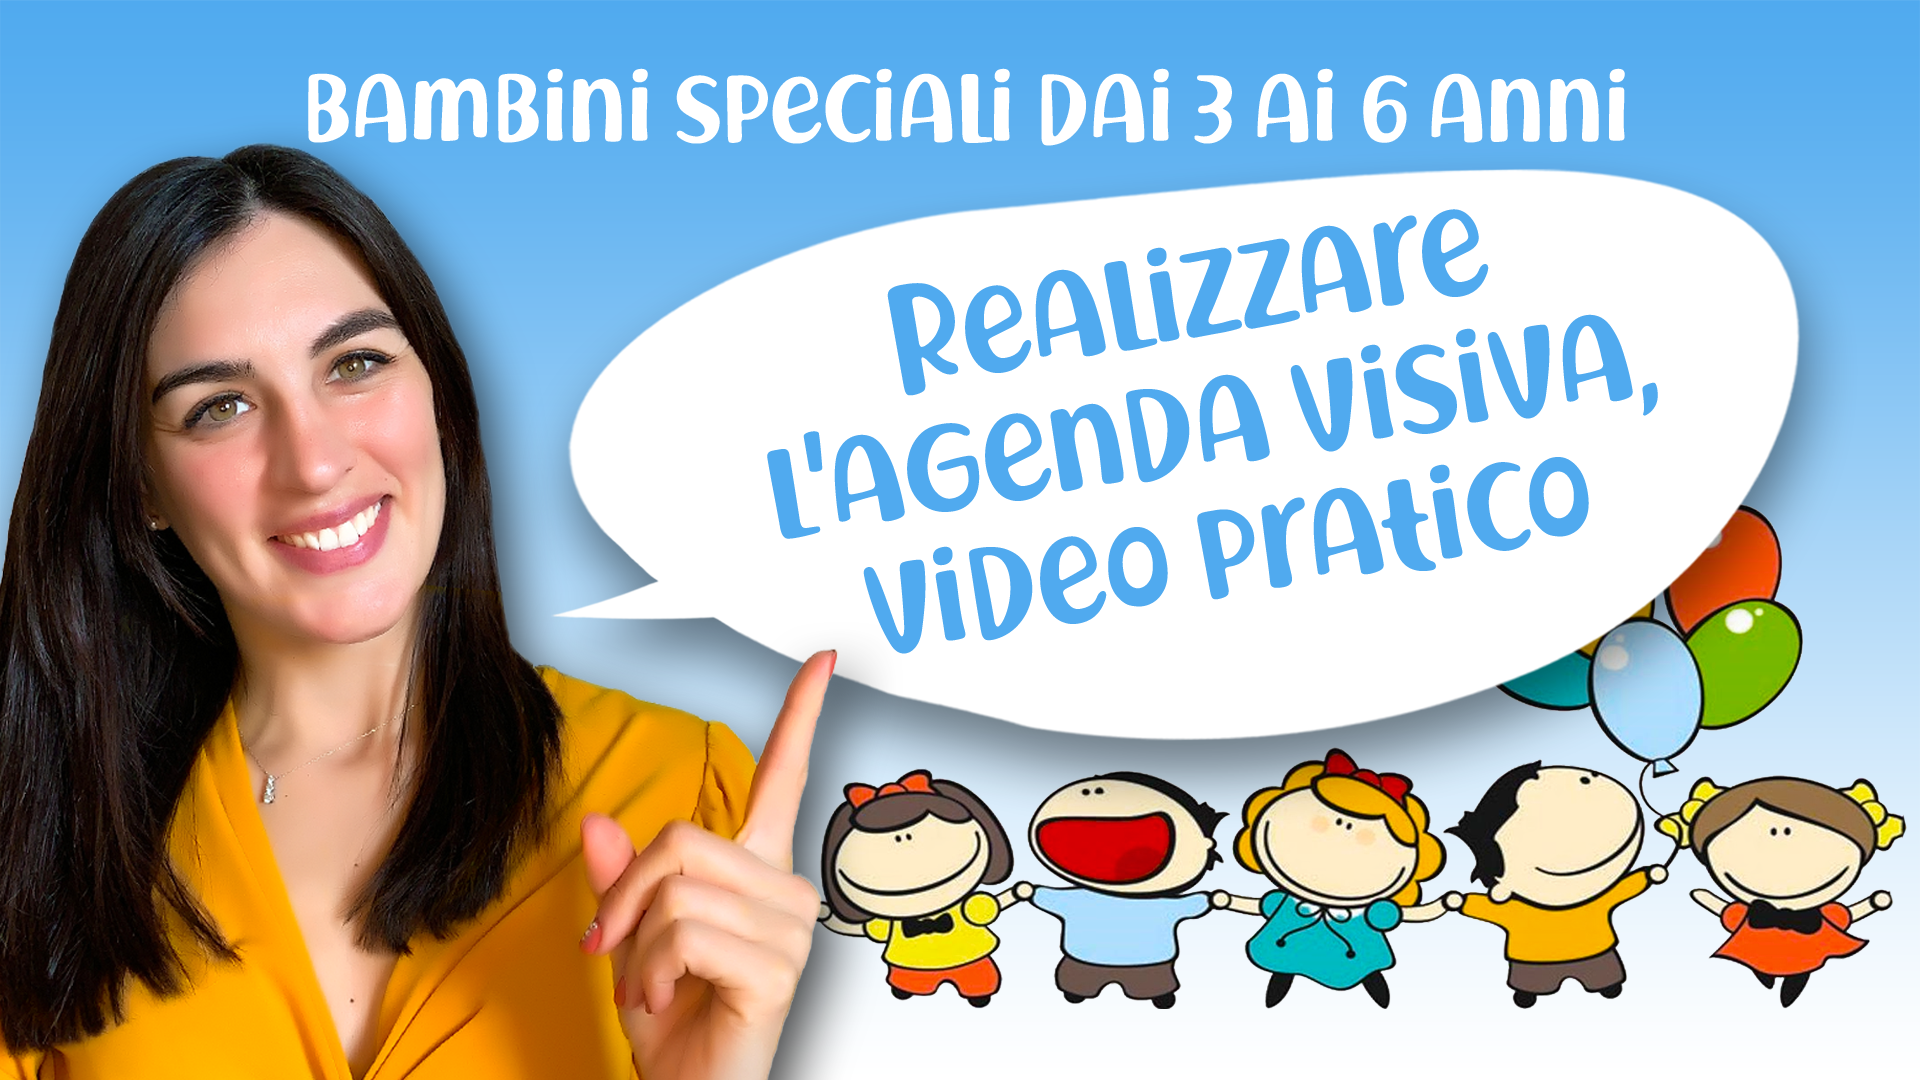 Realizzare l'agenda visiva, video pratico - Bisogni speciali, bambini 3-6  anni